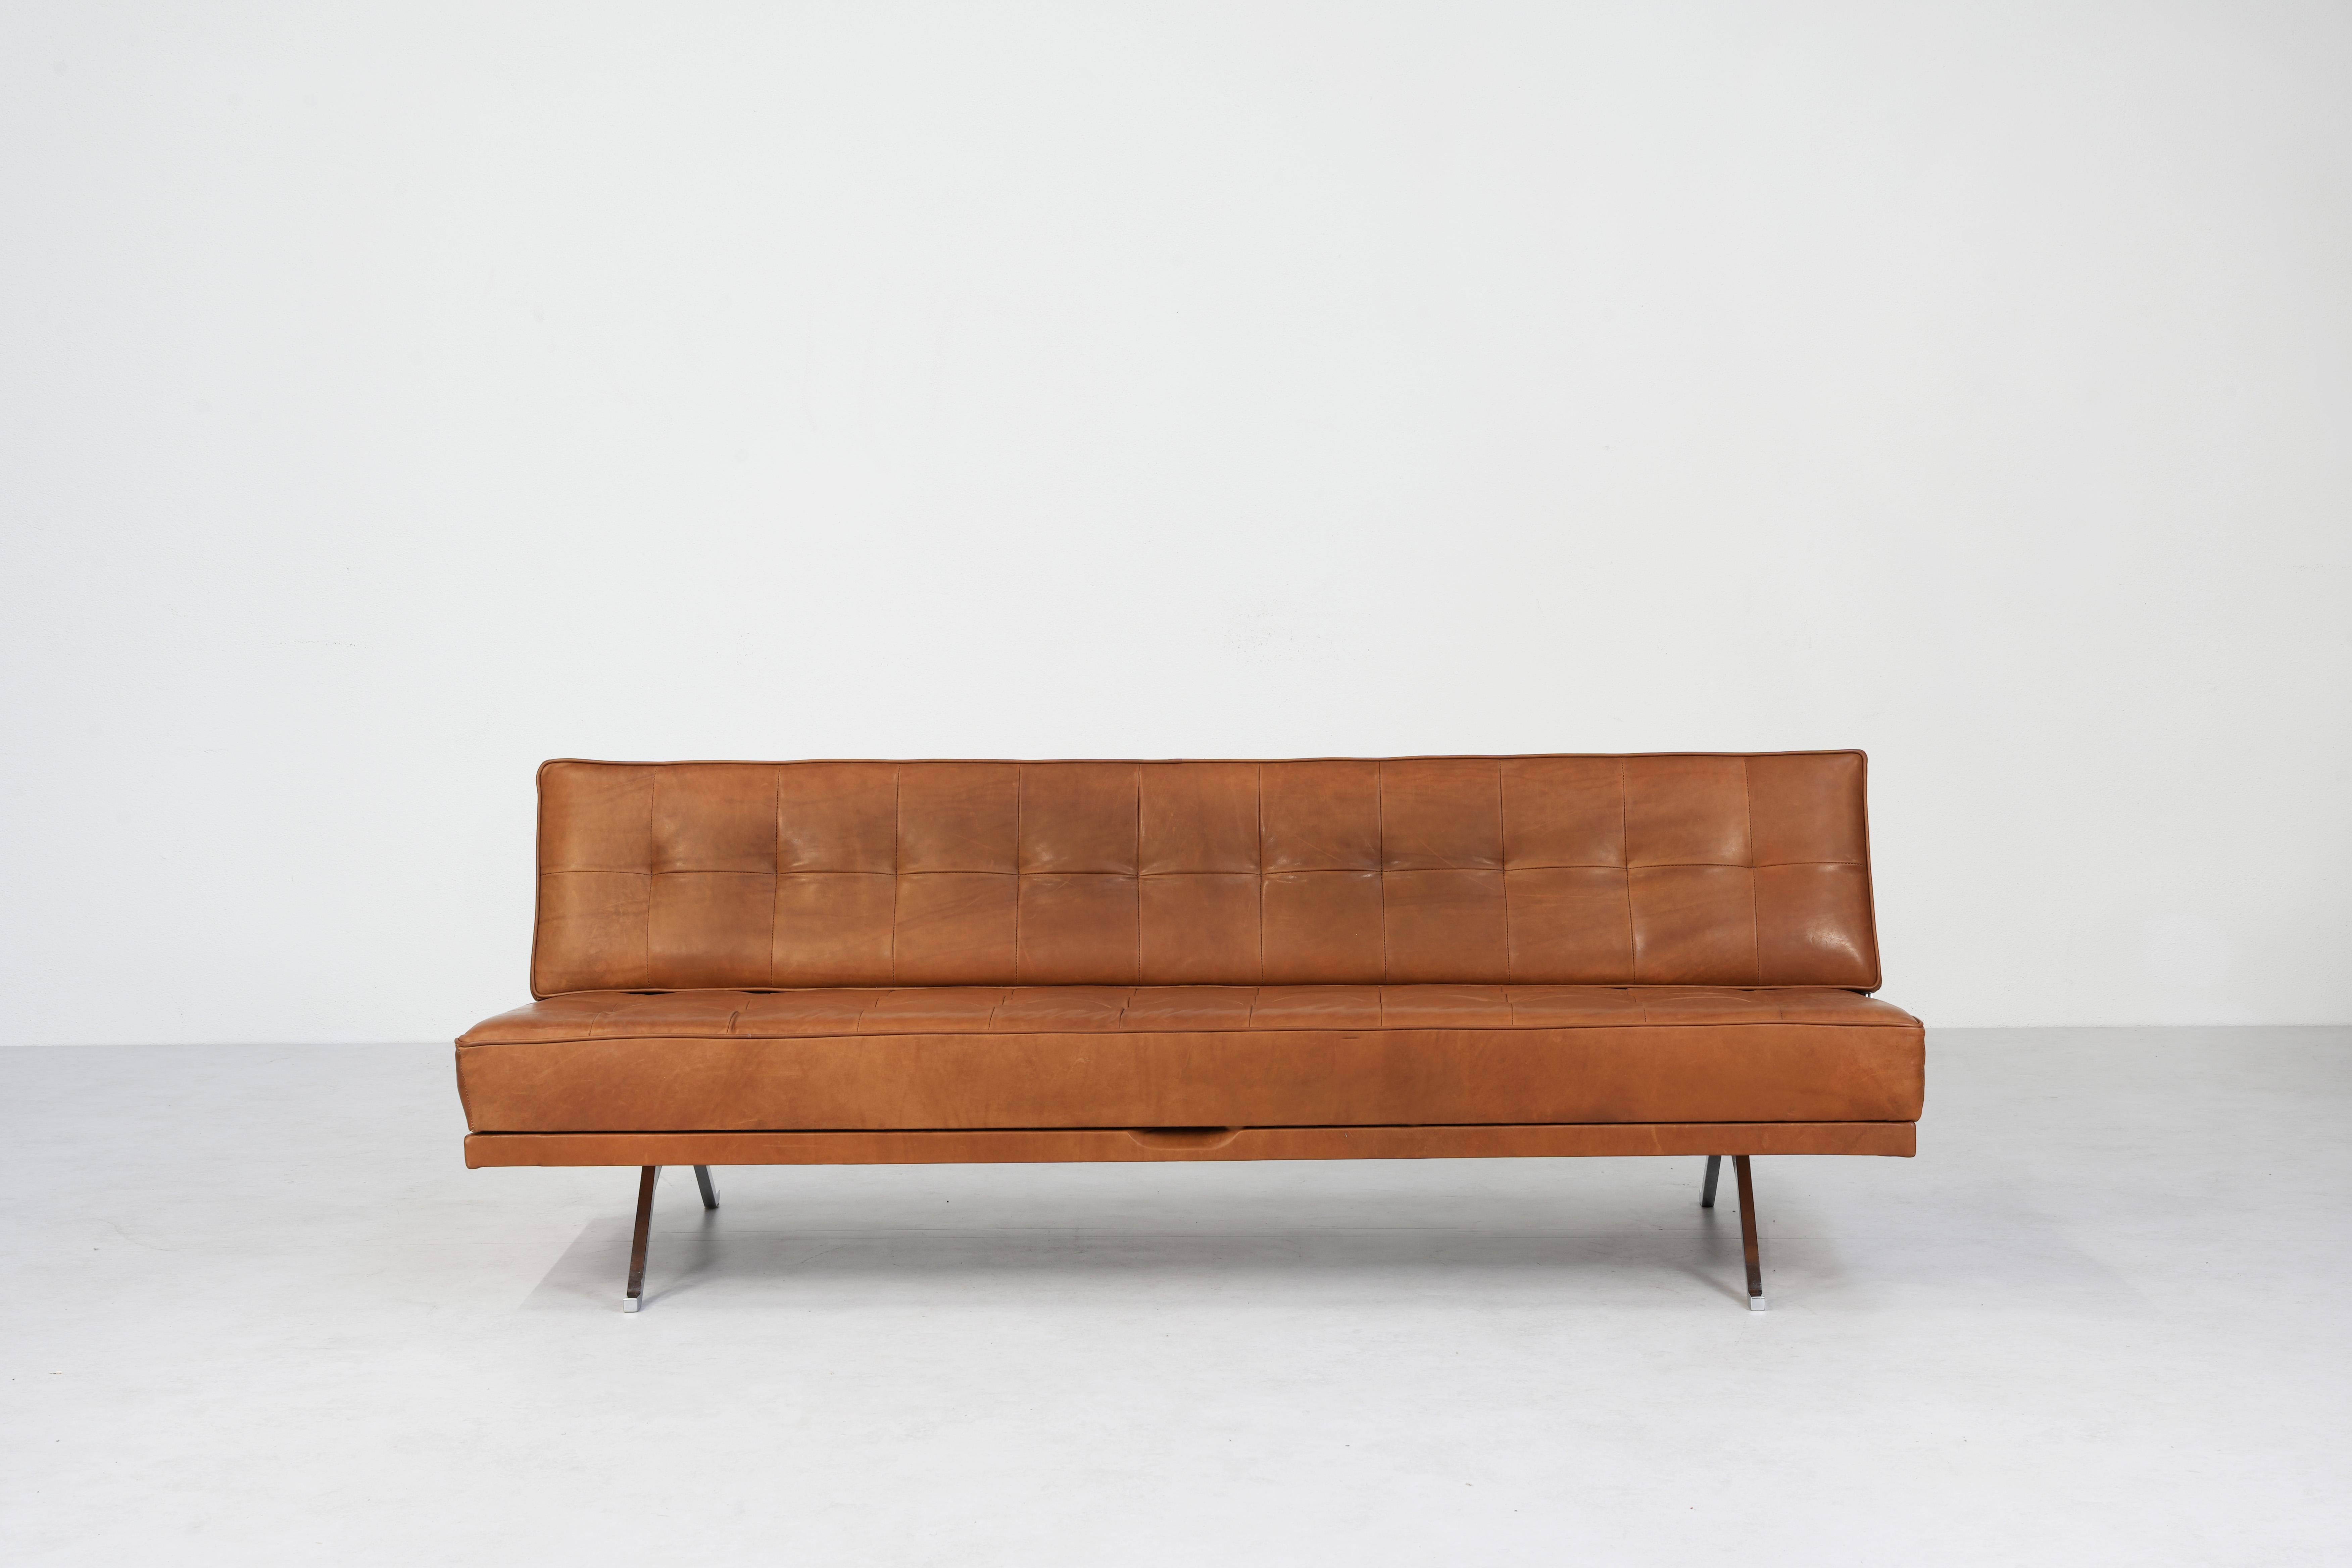 Magnifique canapé-lit de jour Mod. Constanze Conçu par Johannes Spalt pour Wittmann, Autriche, années 1960.
Une construction élégante, qui peut être transformée d'un canapé en un lit d'une seule main et en quelques secondes. 
Le canapé est en cuir